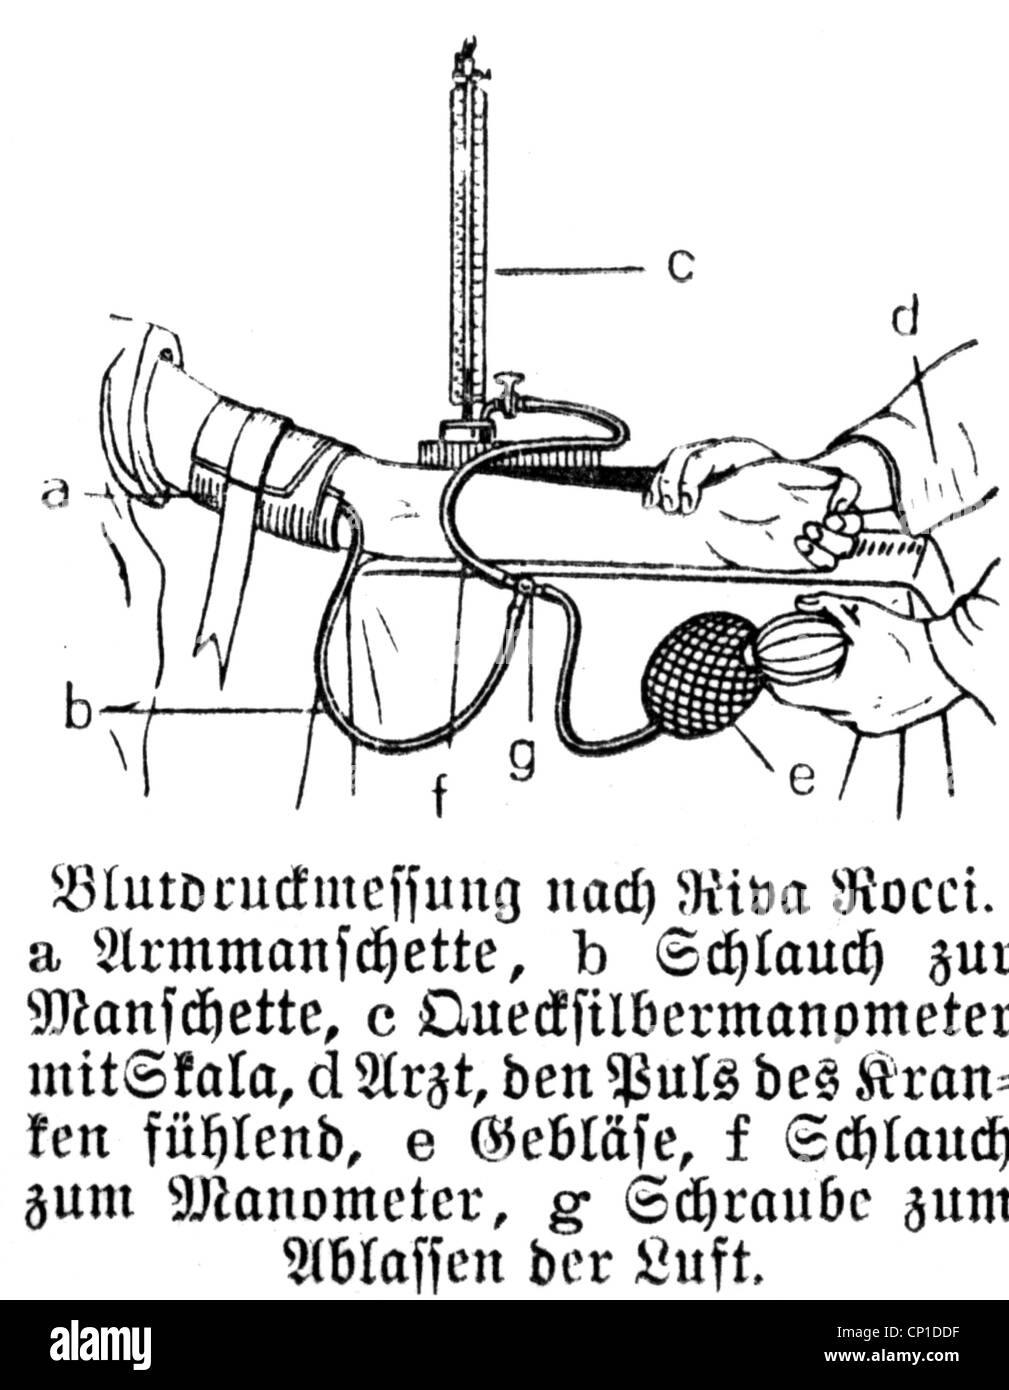 Medizin, medizinische Instrumente, Blutdruckmessgerät von Scipione Riva-Rocci, Zeichnung, 1896, Additional-Rights-Clearences-not available Stockfoto